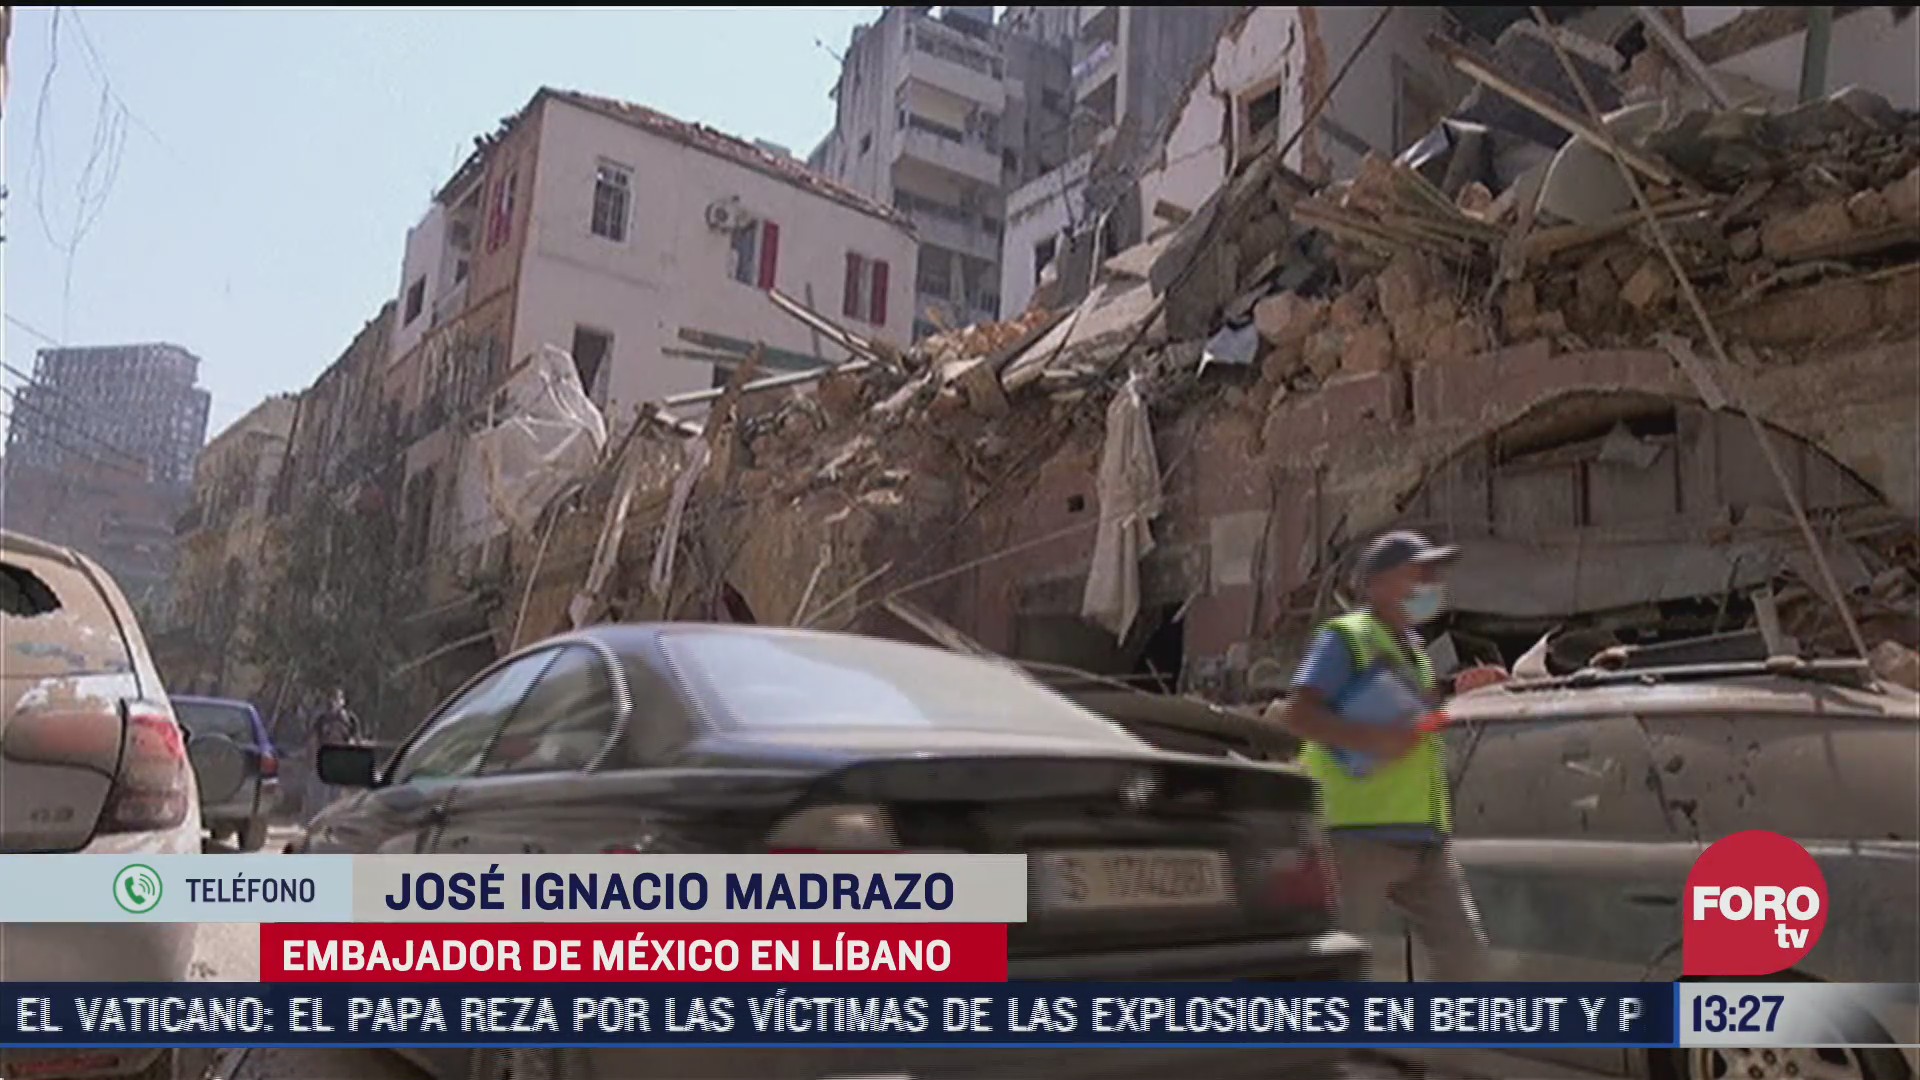 la situacion de los mexicanos en beirut tras explosiones